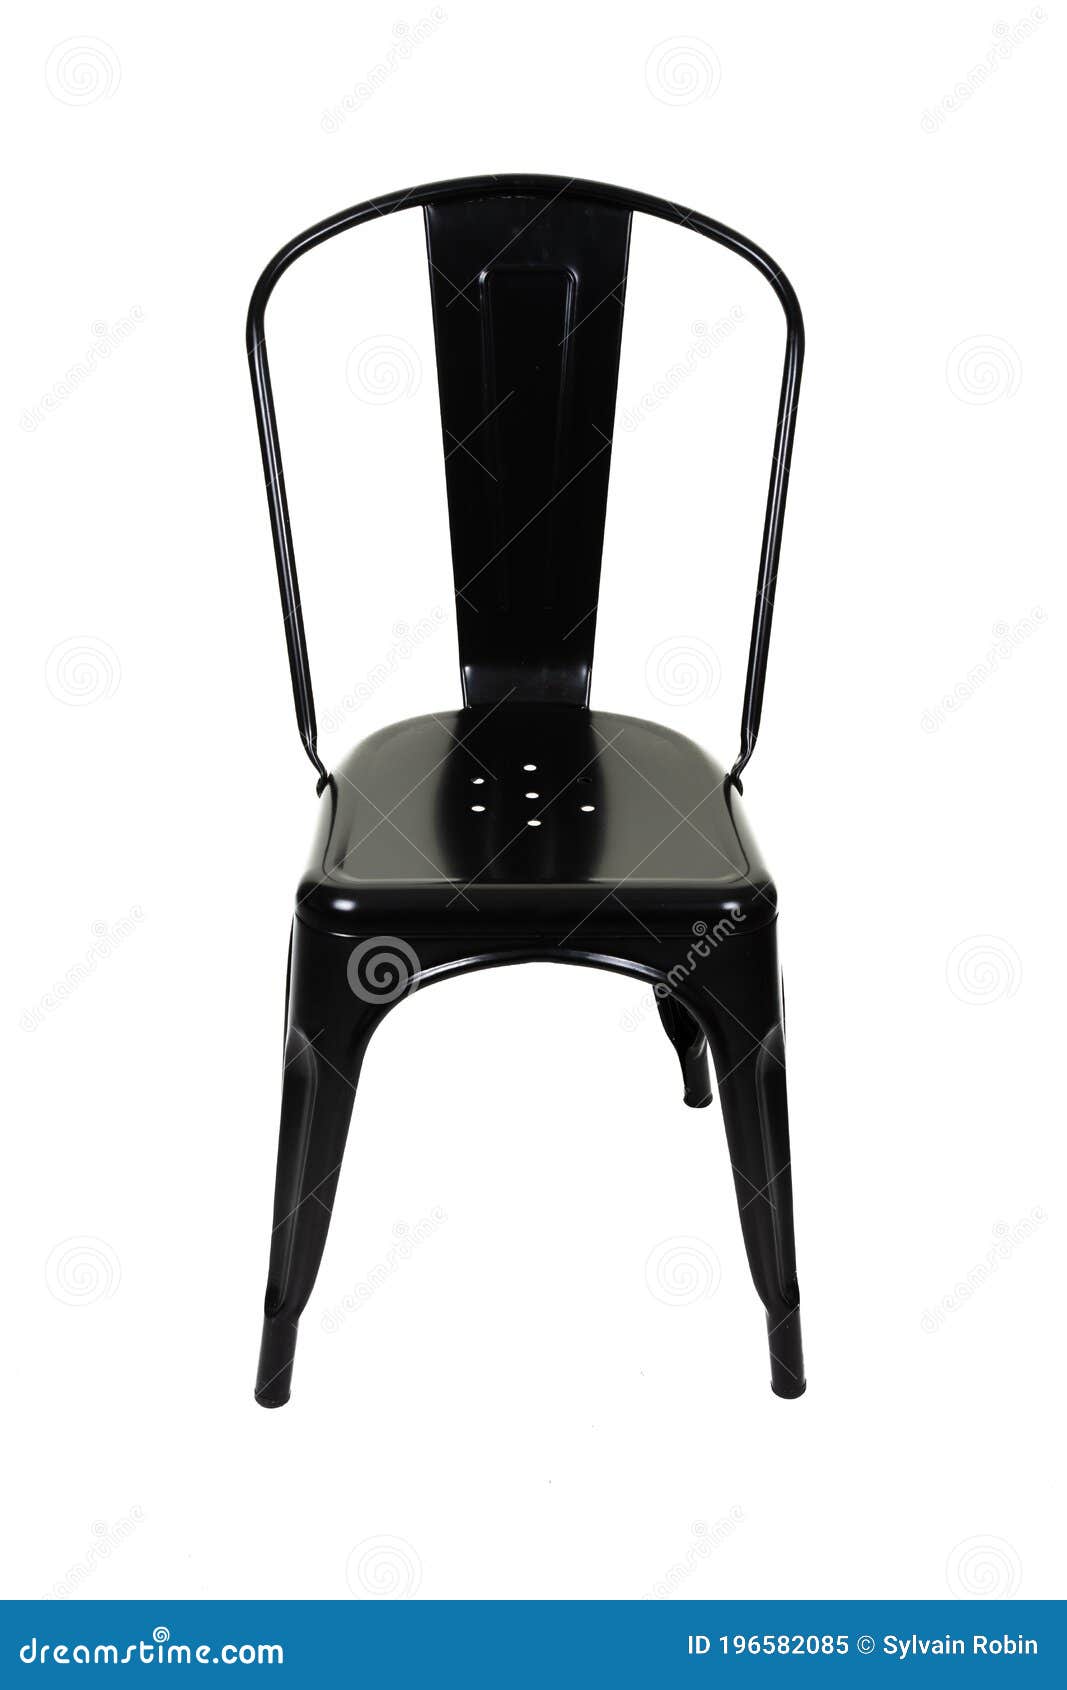 silla silla de lotes 4x bistrostuhl hwc-a73 negro metal diseño industrial